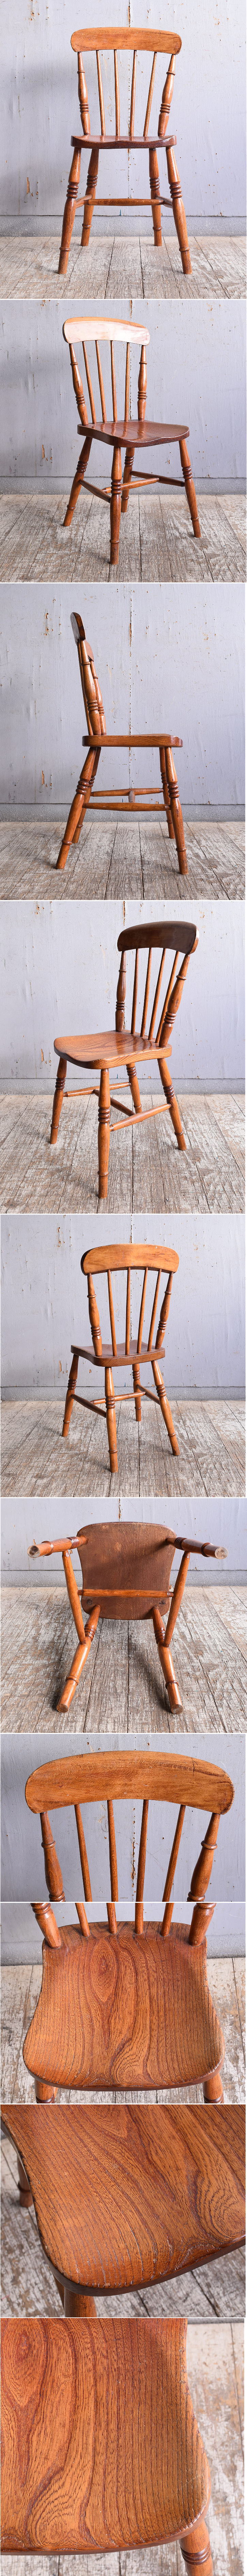 イギリス アンティーク家具 キッチンチェア 椅子 11393